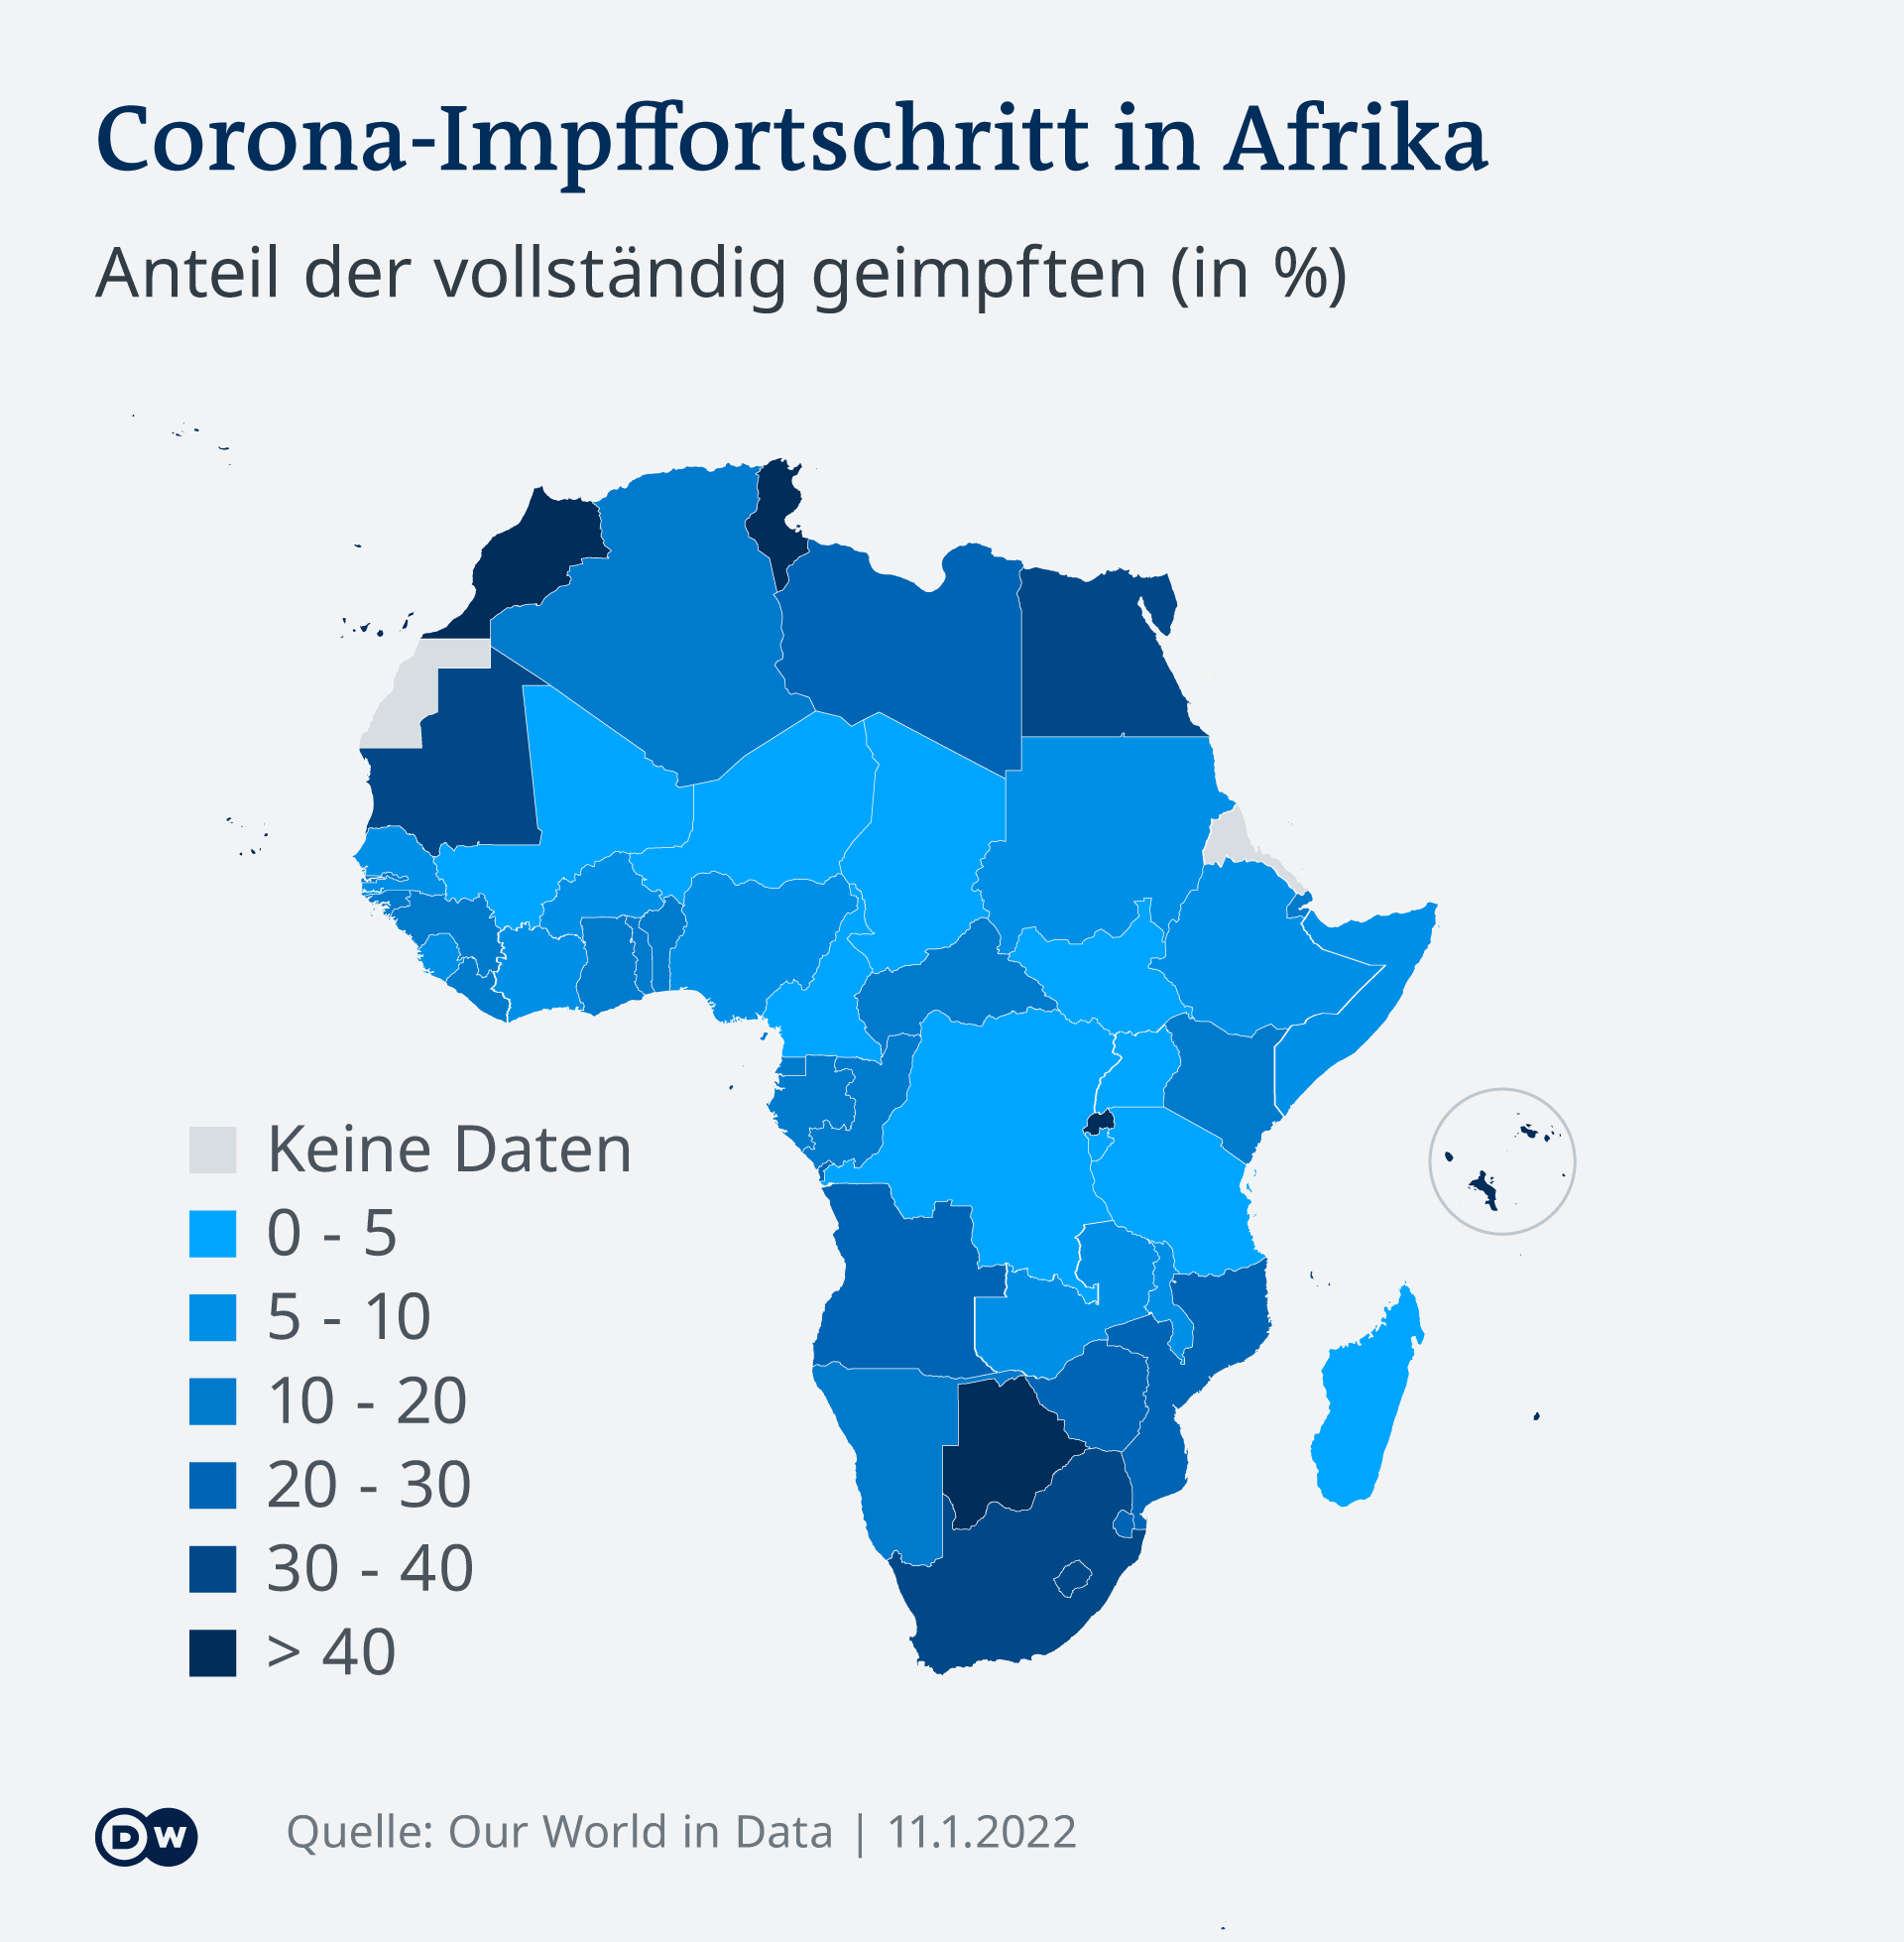 Afrički kontinent obojan u nijanse plave boje. Samo rijetke zemlje imaju stopu cijepljenja iznad 40 posto.